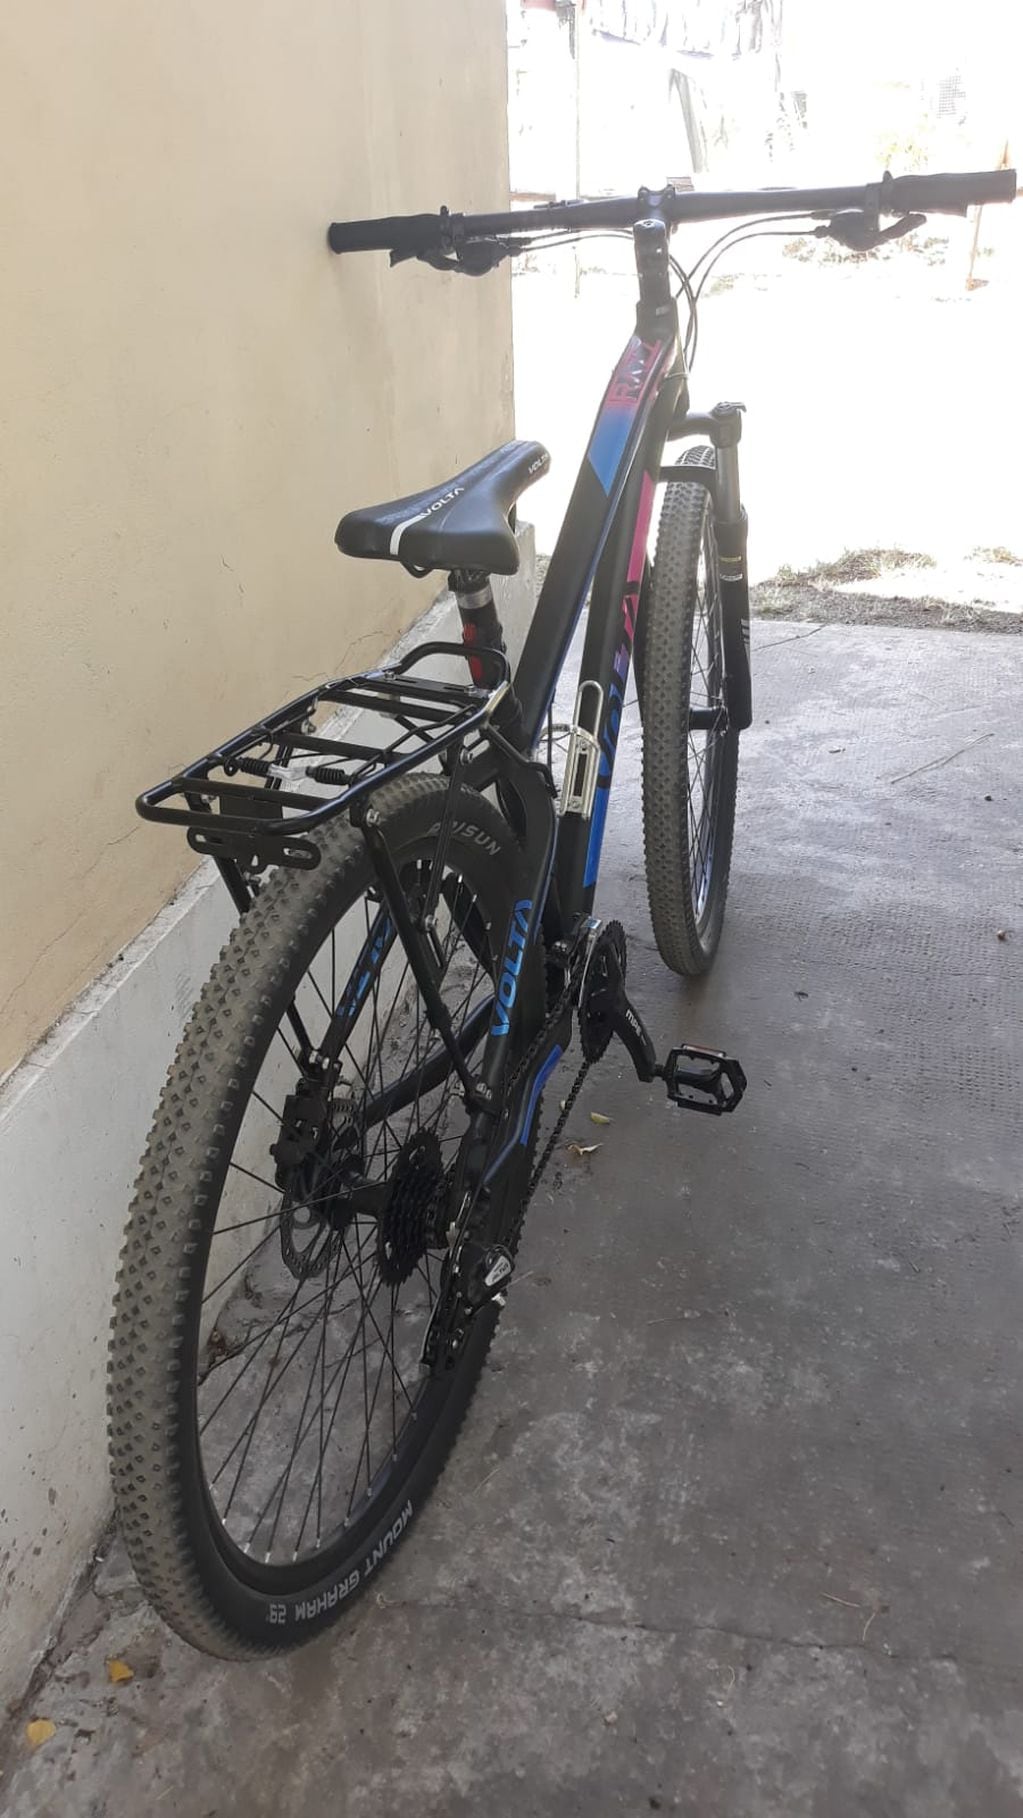 Les robaron las bicis en Mendoza, casi las recuperaron y ahora ven que las venden en Facebook sin poder hacer nada. Fuente: Gentileza.